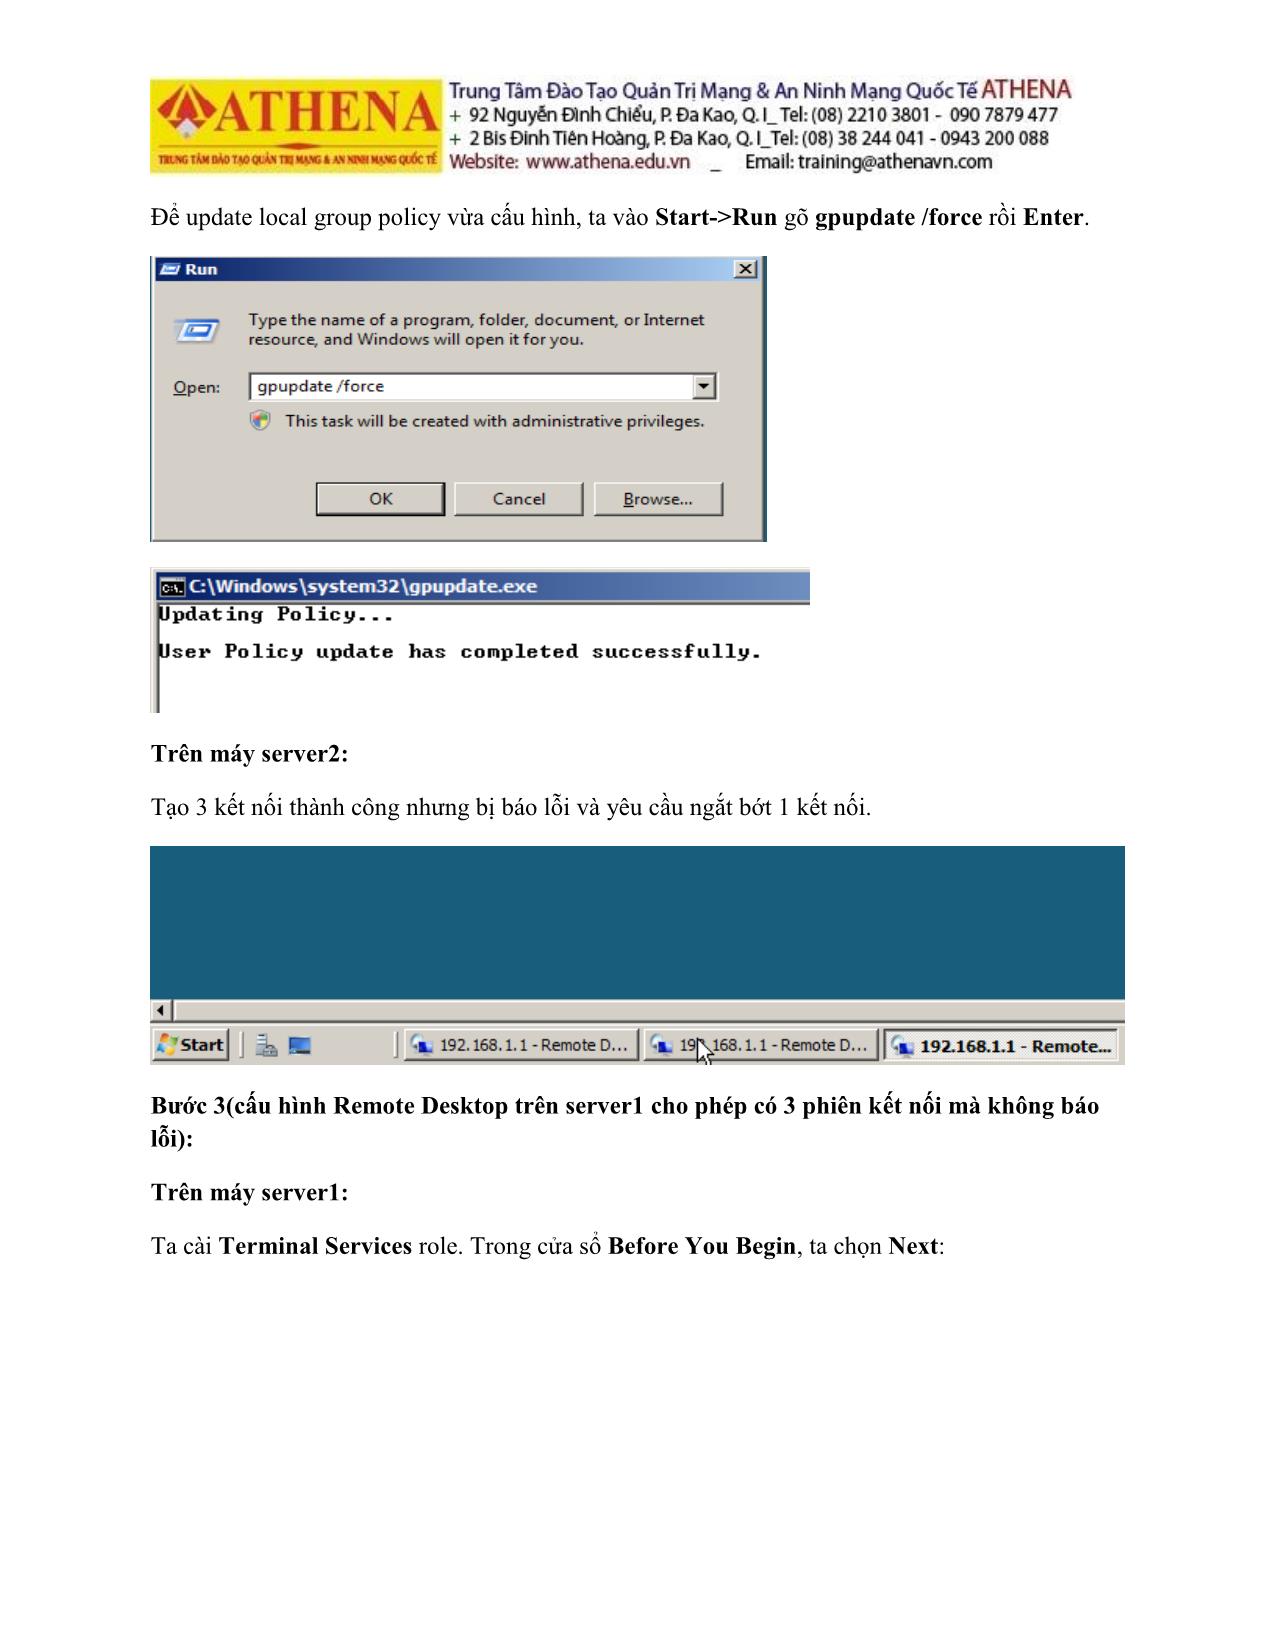 Tài liệu Hướng dẫn thực hành quản trị mạng - Remote desktop trang 9